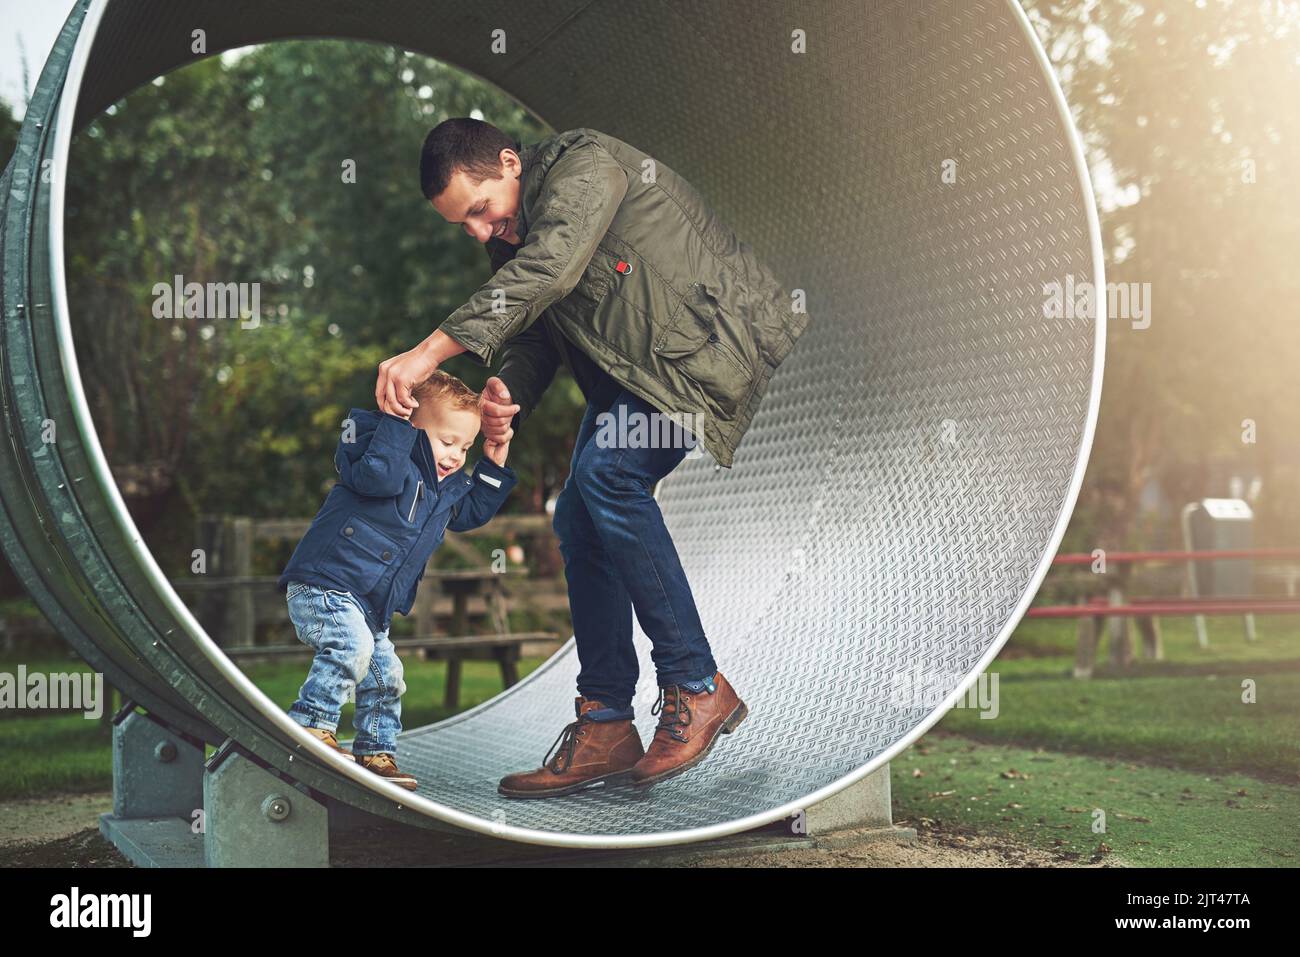 Versuchen Sie nicht zu fallen. Ein Vater und sein kleiner Sohn spielen zusammen auf einem Laufrad im Park. Stockfoto